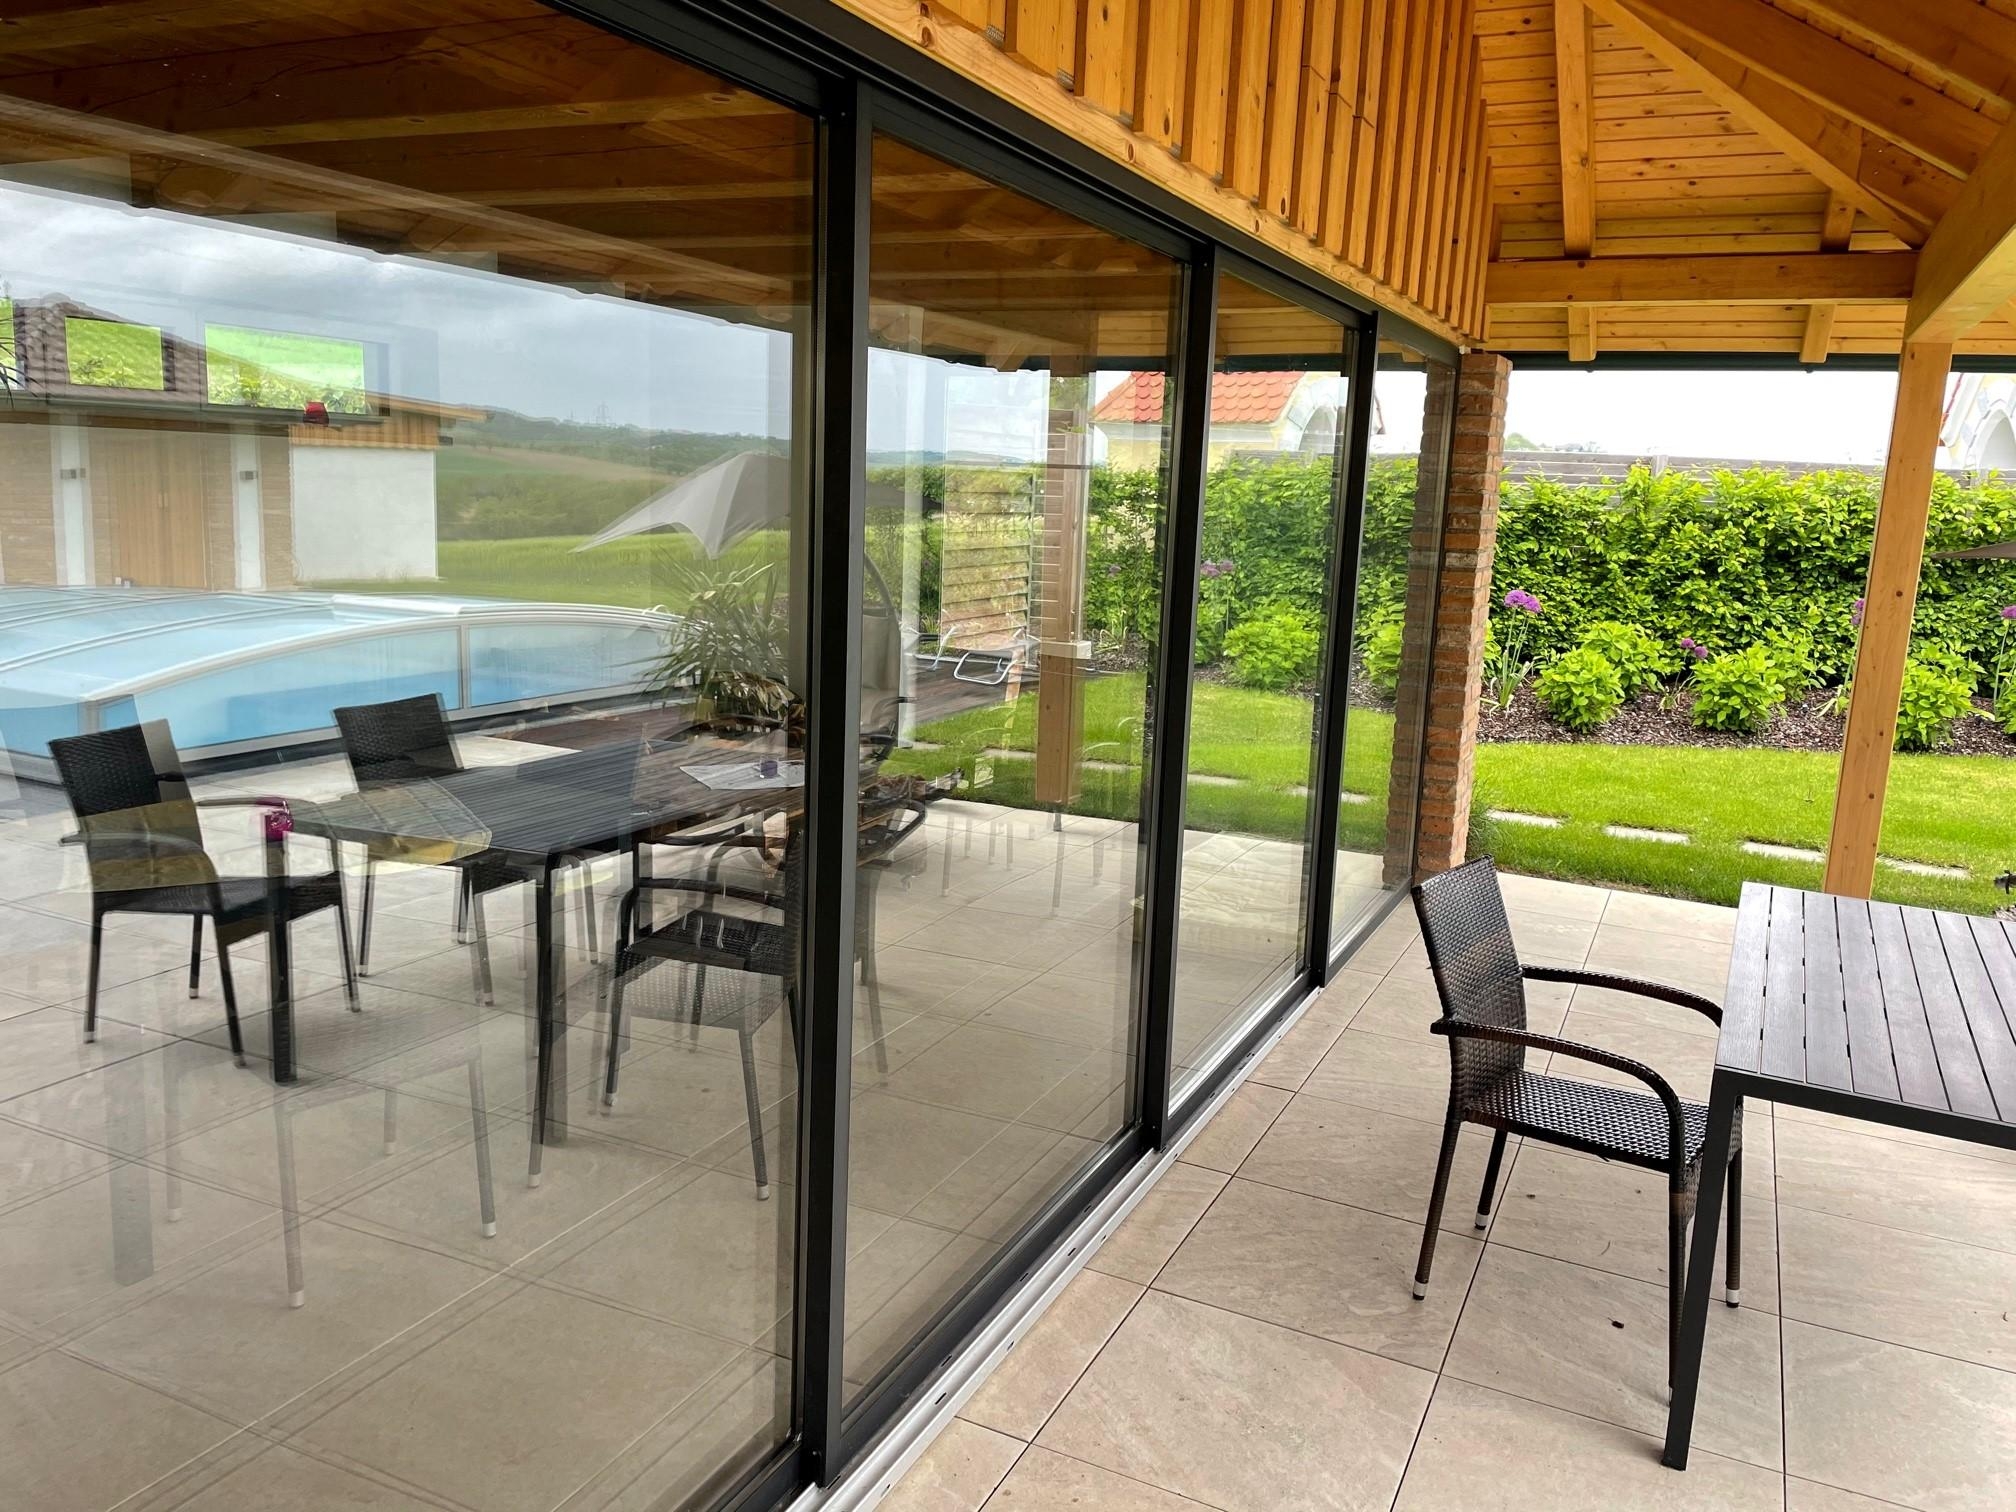 Noch ein Einblick in unser neues Gartenhausprojekt. Schiebetüren mit großen Glasflächen für viel Licht und Wärme!